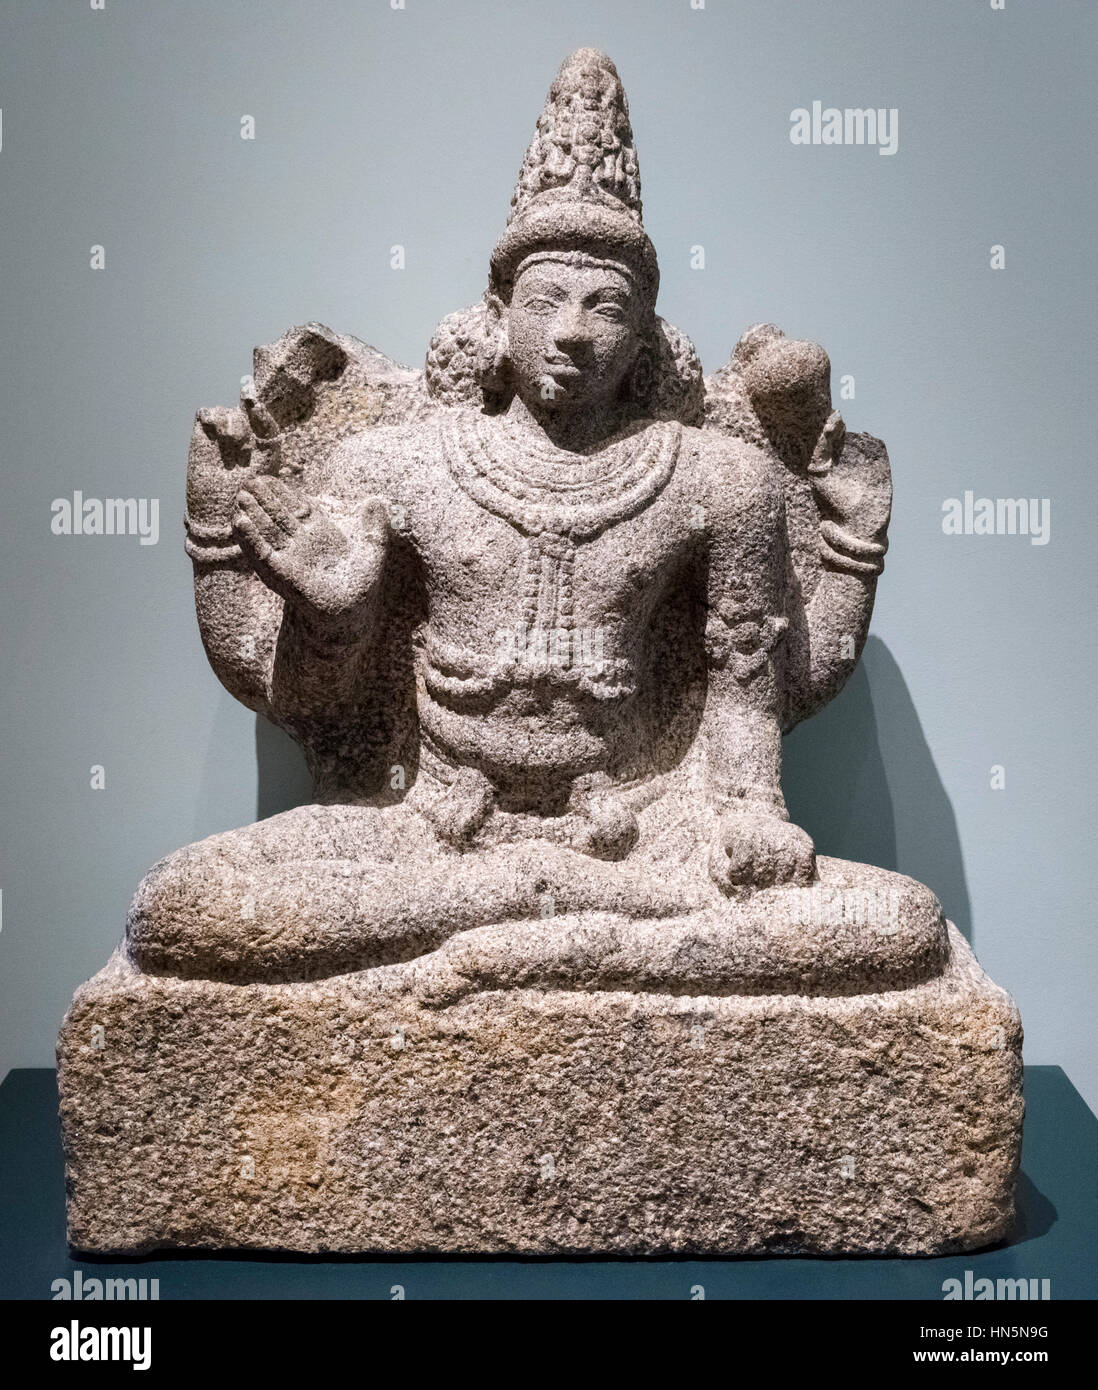 Vishnu sentado en meditación como el gran reservorio, c.800 AD. Estatua de granito de la deidad hindú Vishnu. Foto de stock